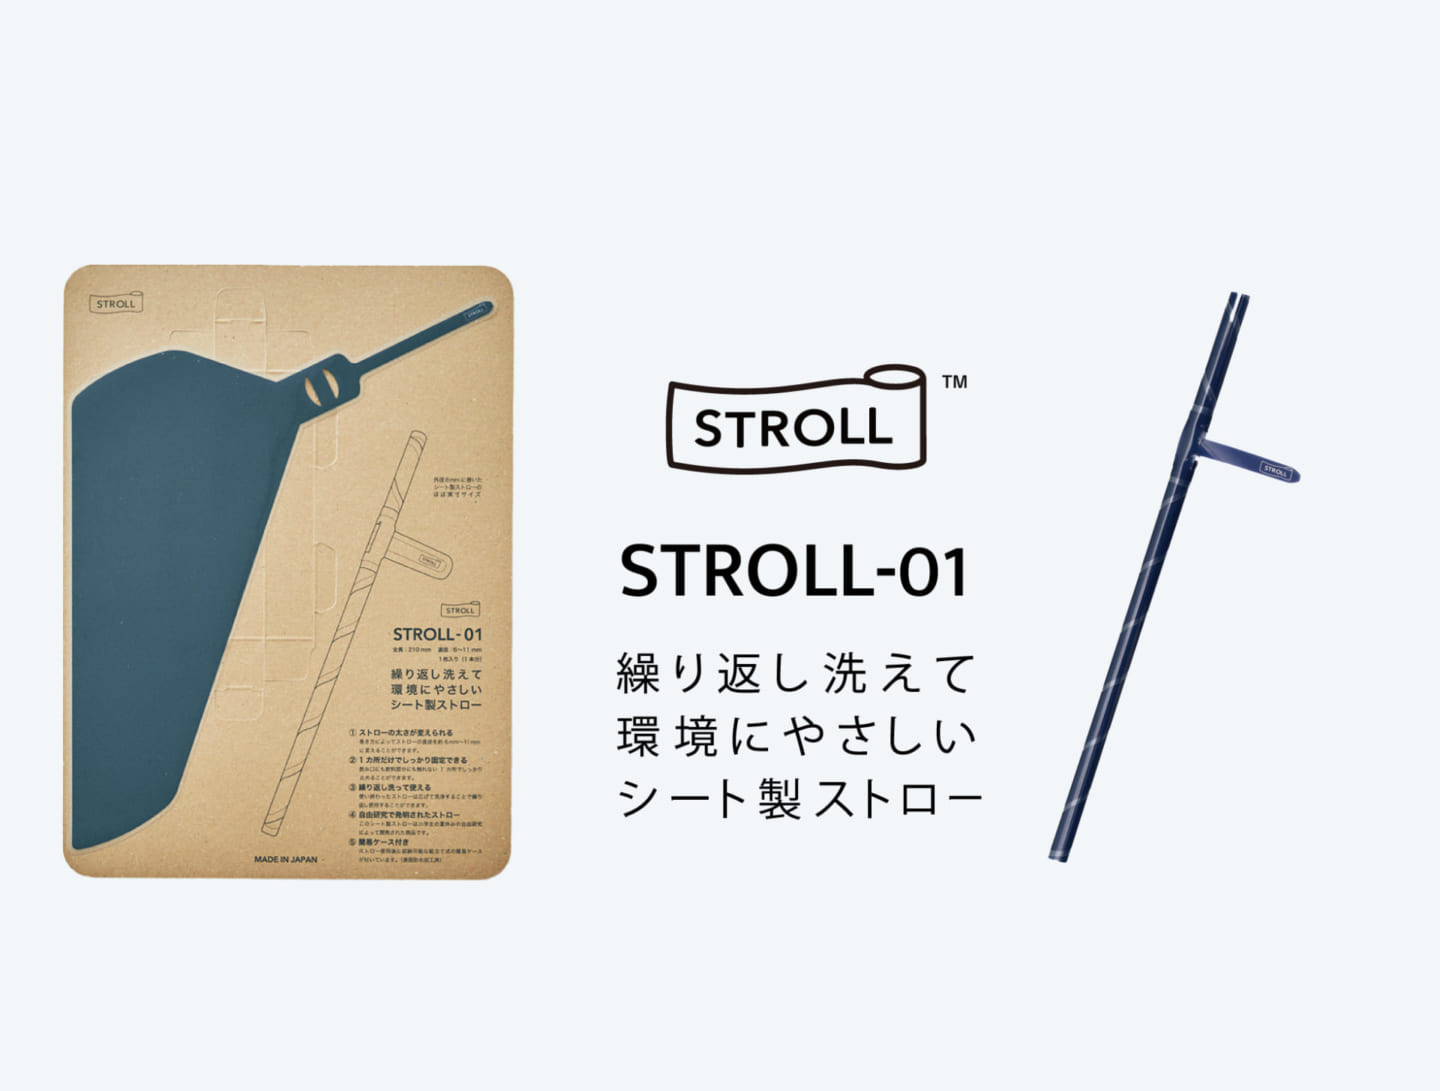 1枚のシートを巻いて使用する 再利用可能なストロー「STROLL_01」 | Webマガジン「AXIS」 | デザインのWebメディア